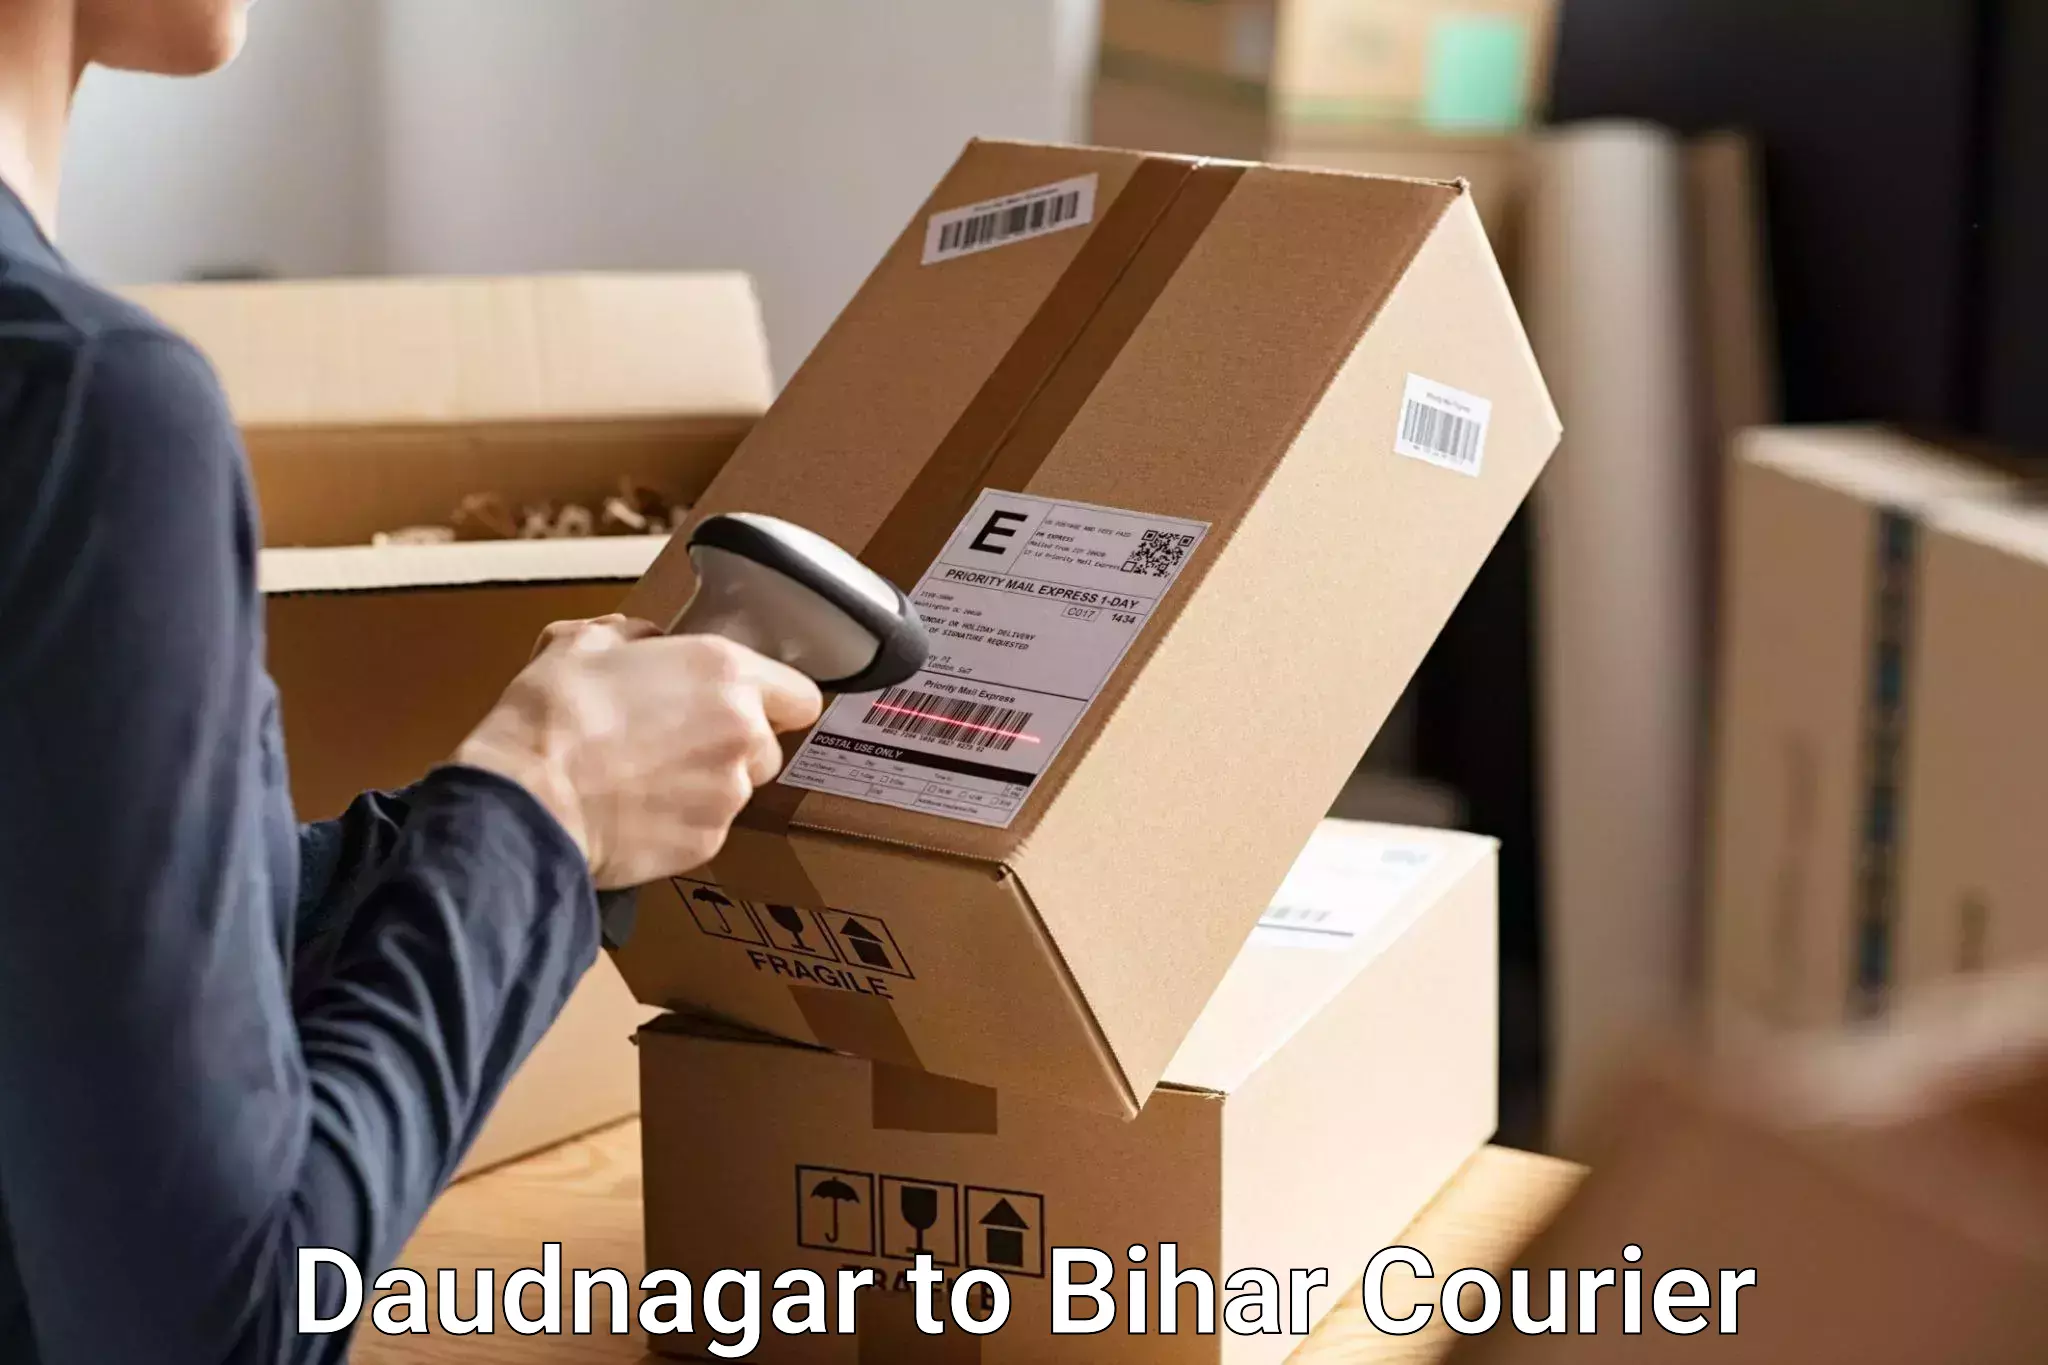 Luggage delivery operations Daudnagar to Daudnagar